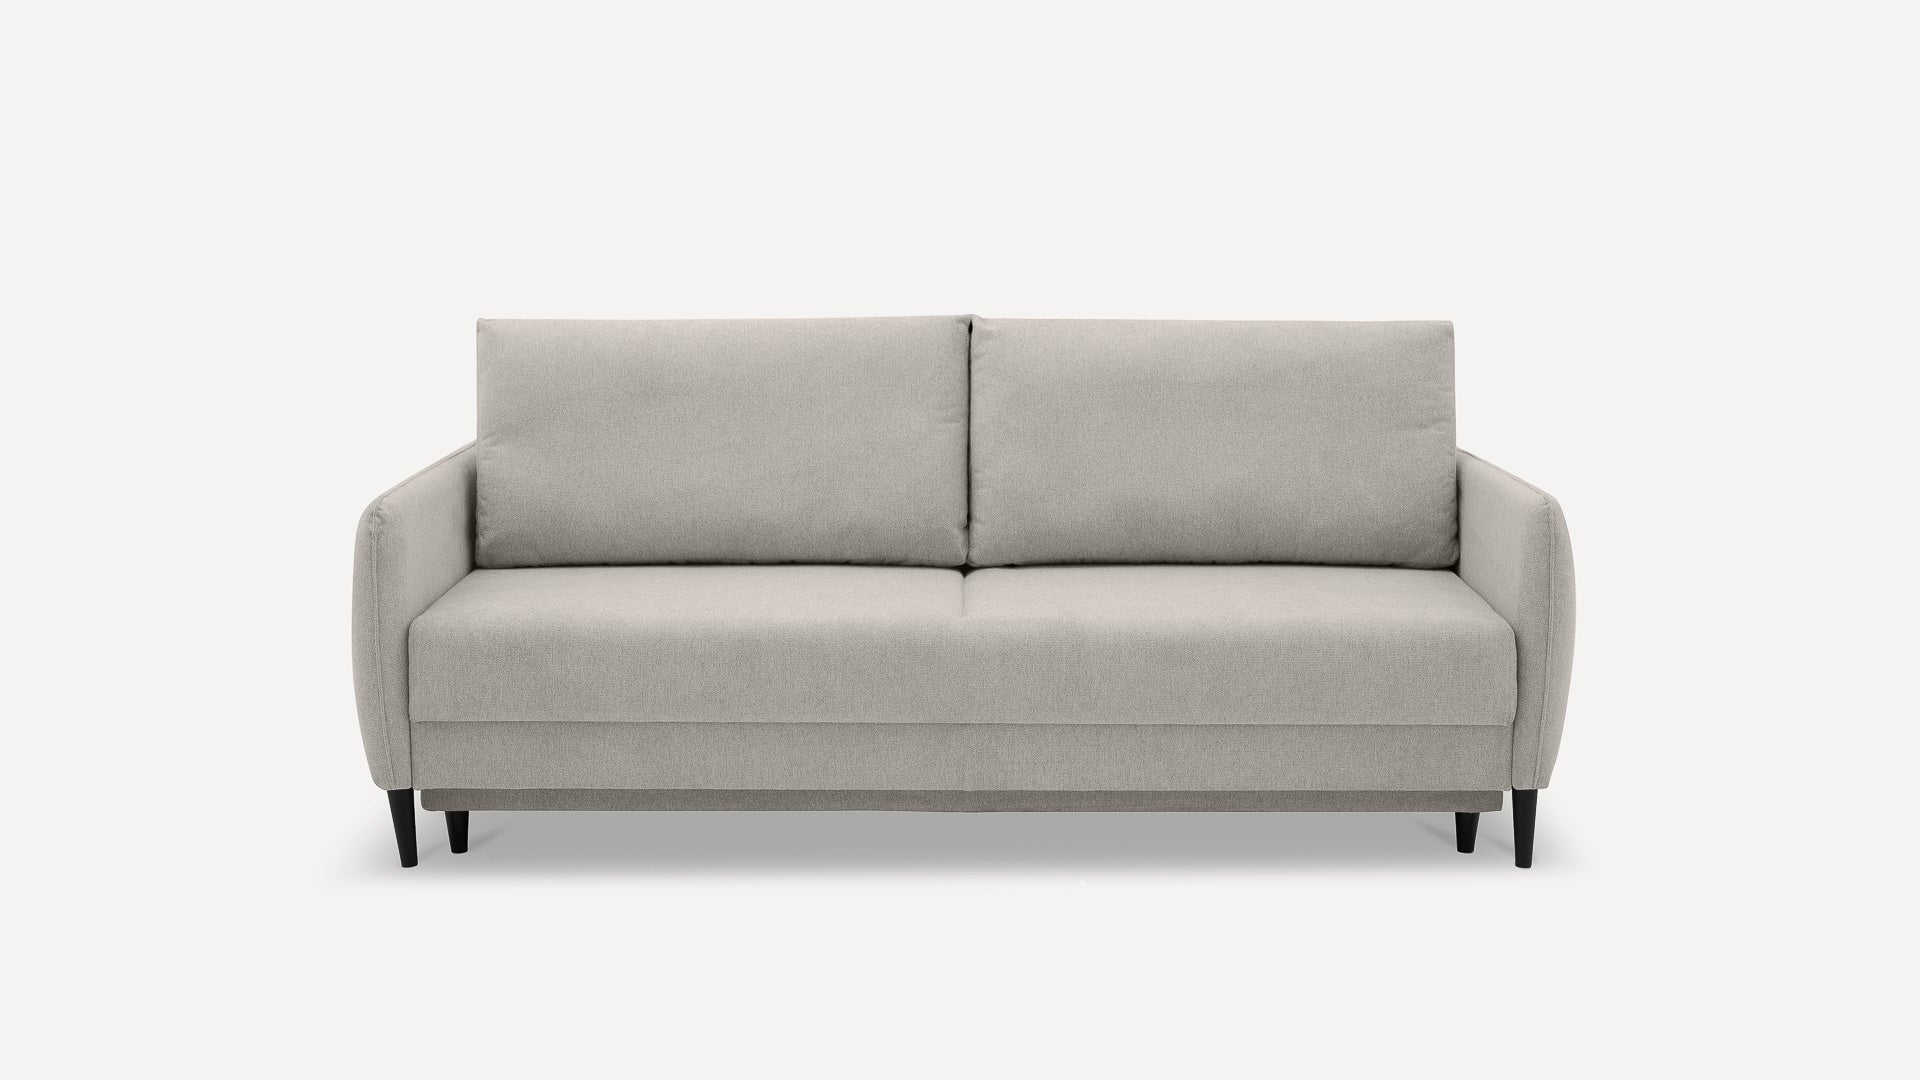 Sofa Benet DL Szenil - Benet